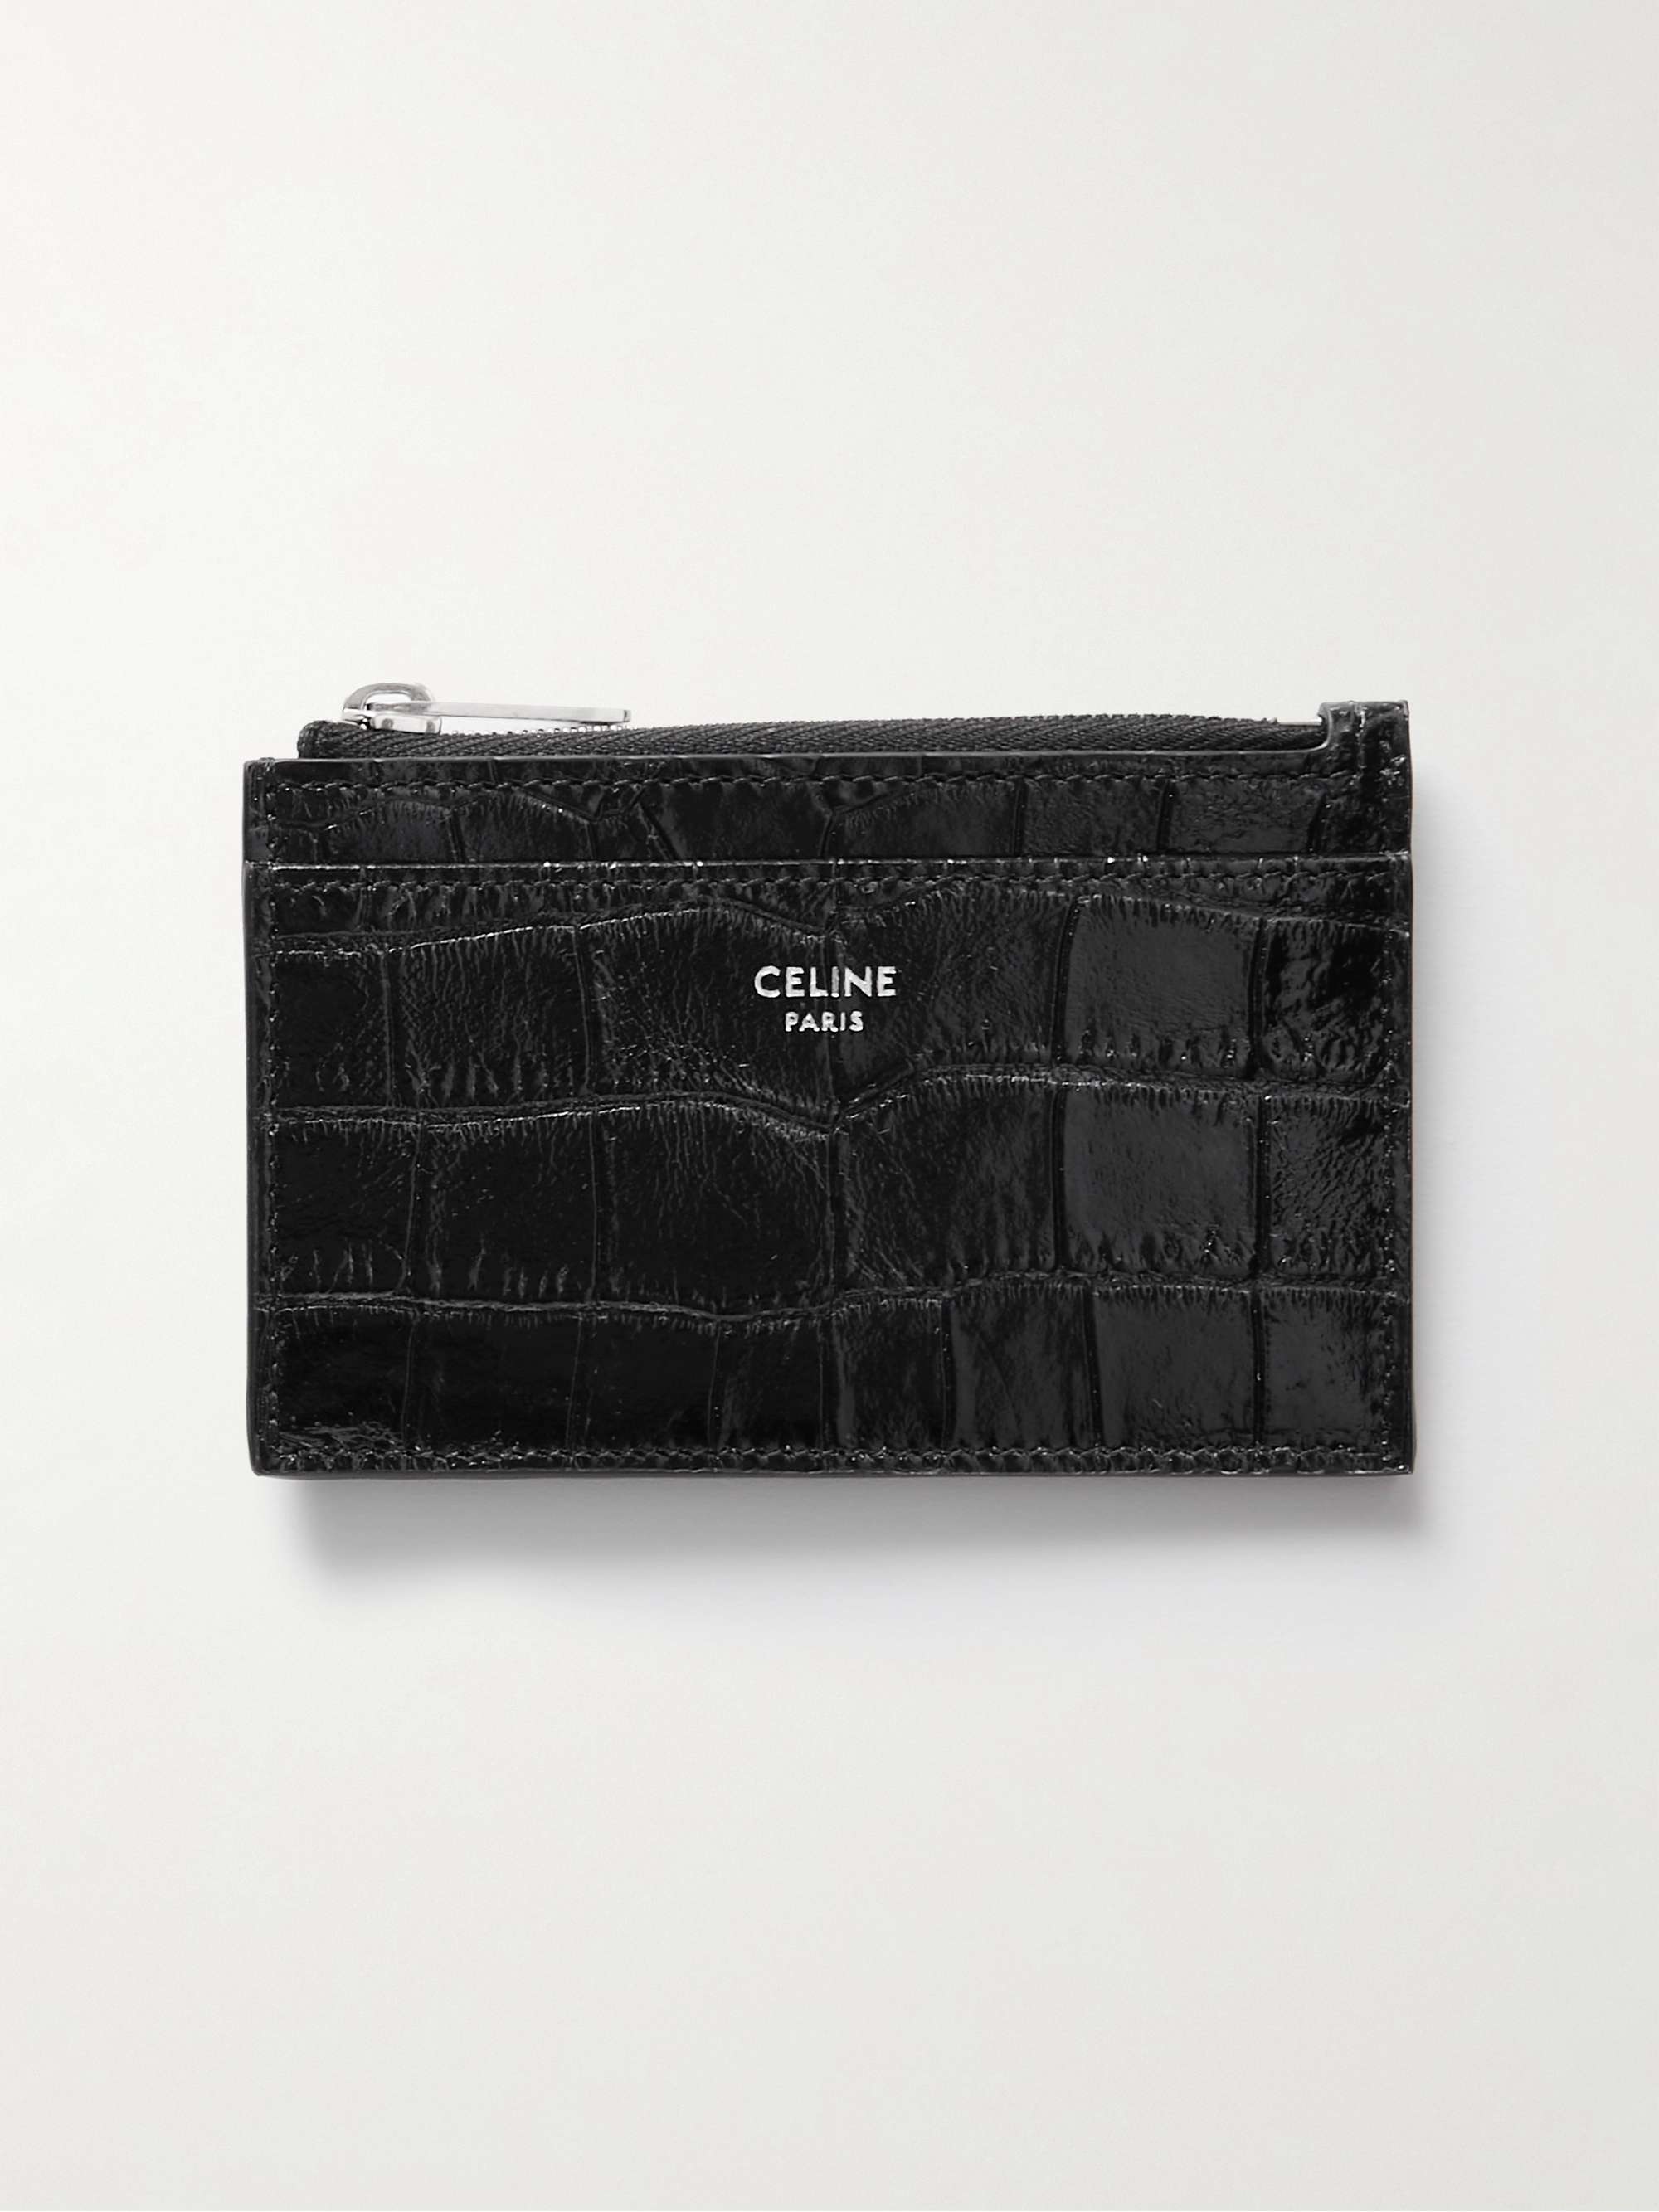 Celine Homme croc-effect Leather Zipped Cardholder - Men - Black Wallets